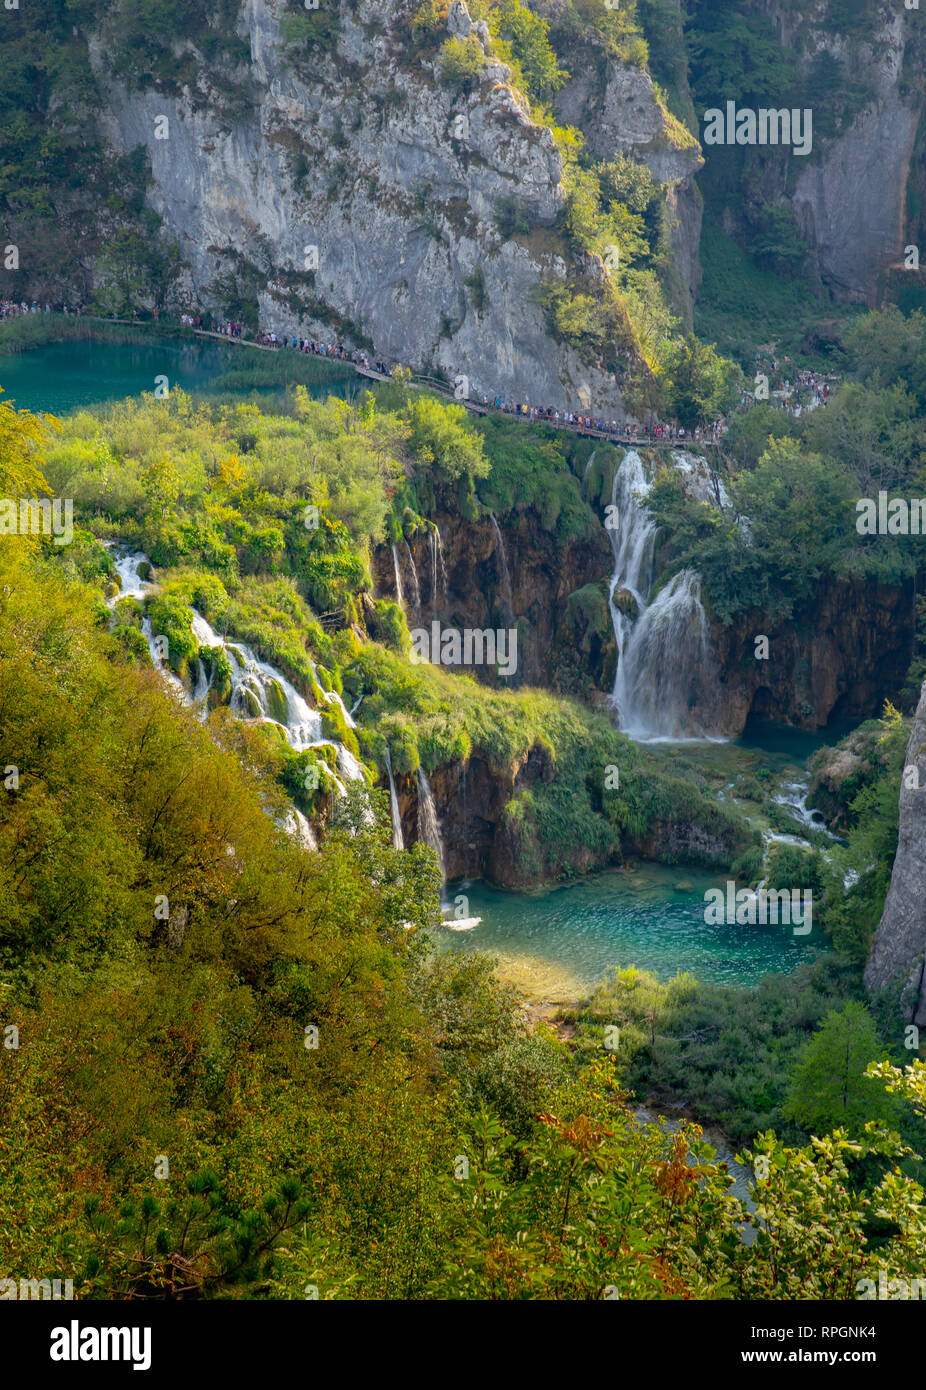 Los lagos de Plitvice & Cascadas vistos desde cerca de la entrada 1. Muchos turistas pueden pasear por los senderos de madera a través del hermoso paisaje. Foto de stock